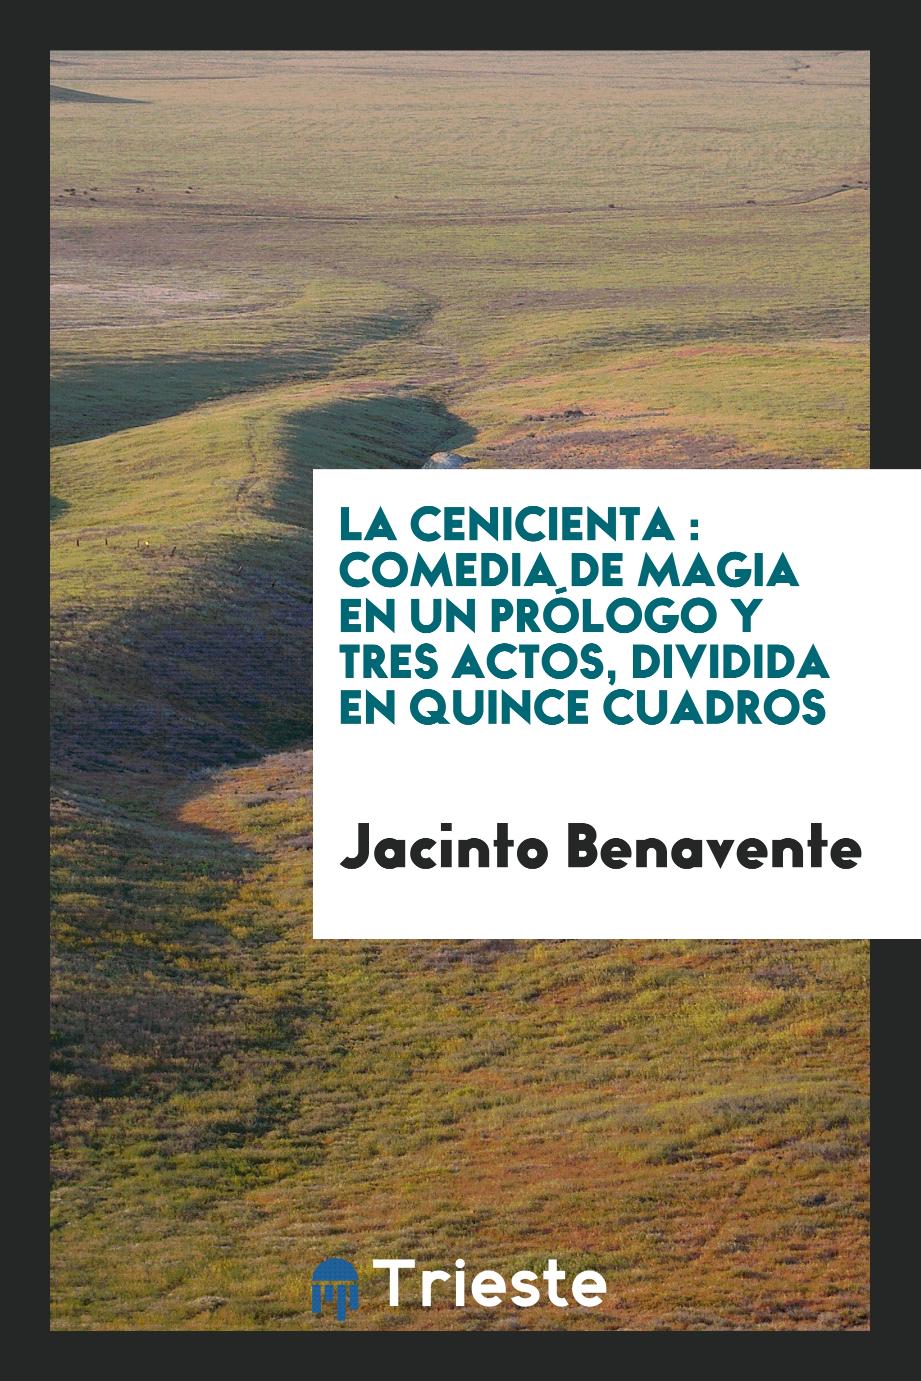 Jacinto Benavente - La Cenicienta : comedia de magia en un prólogo y tres actos, dividida en quince cuadros